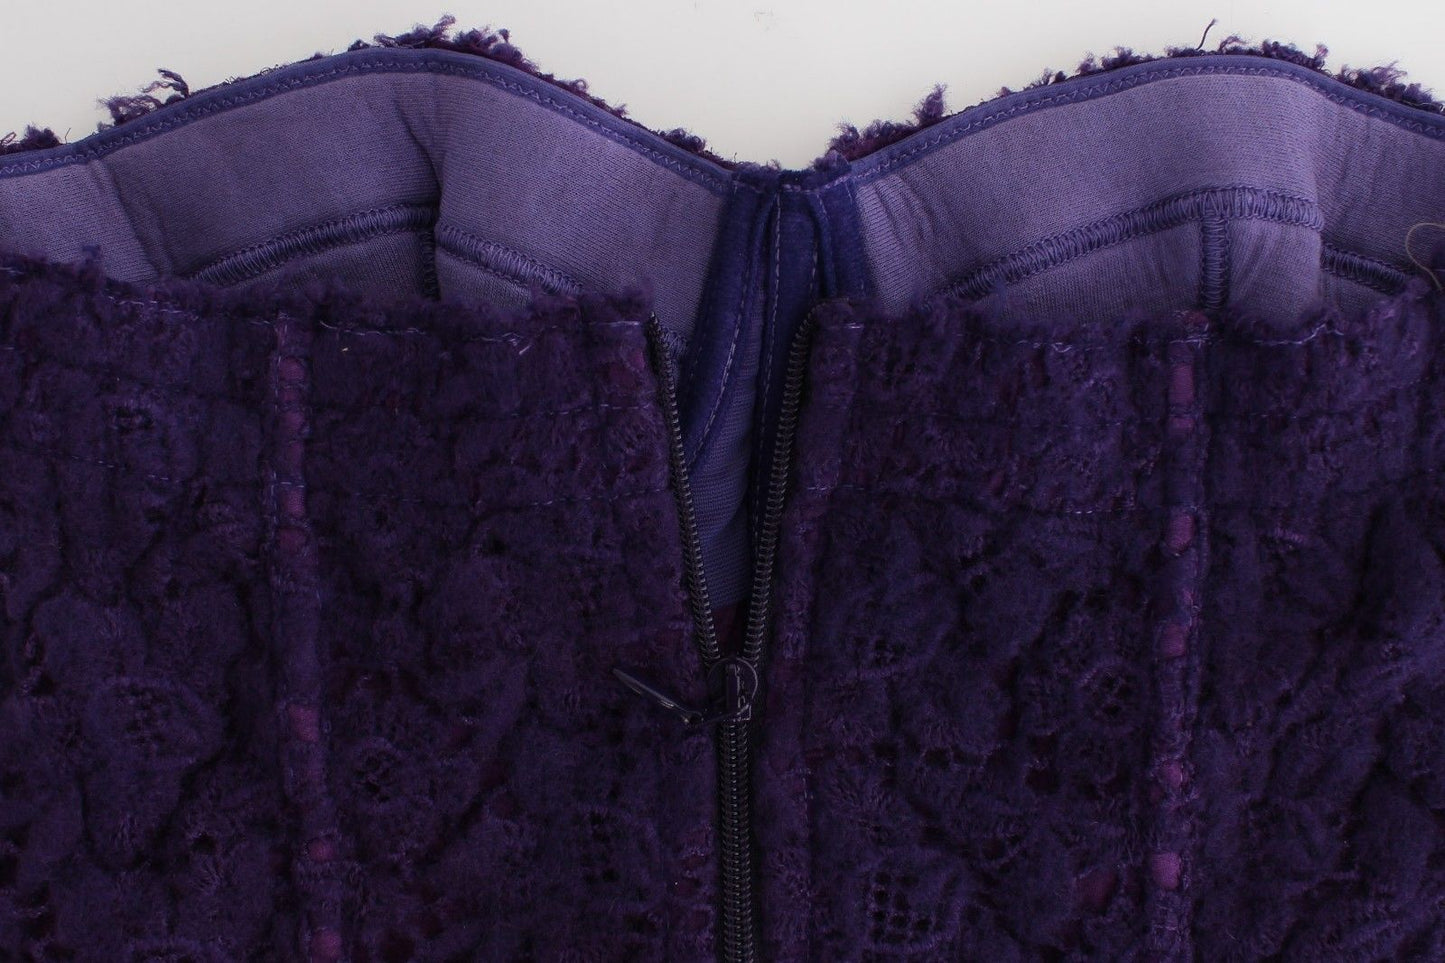 Ermanno Scervino Lingerie Purple Corset Bustier Top Floral Lace